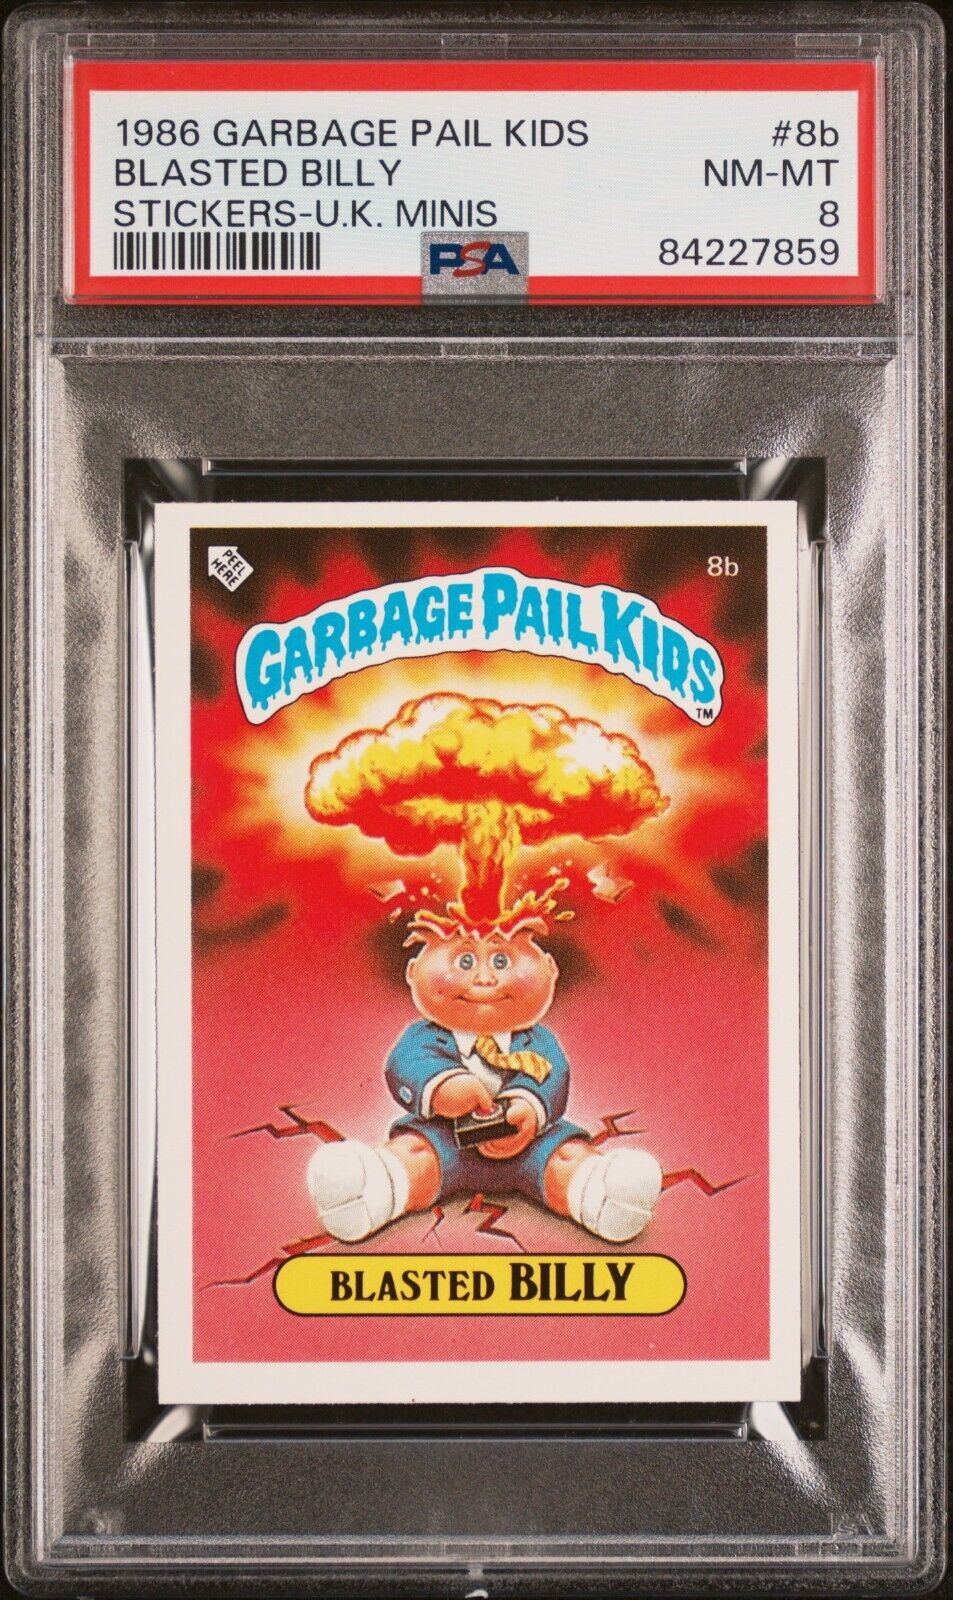 1986 Garbage Pail Kids OS1 Series 1 UK Mini BLASTED BILLY 8b Card PSA 8 NM-MT